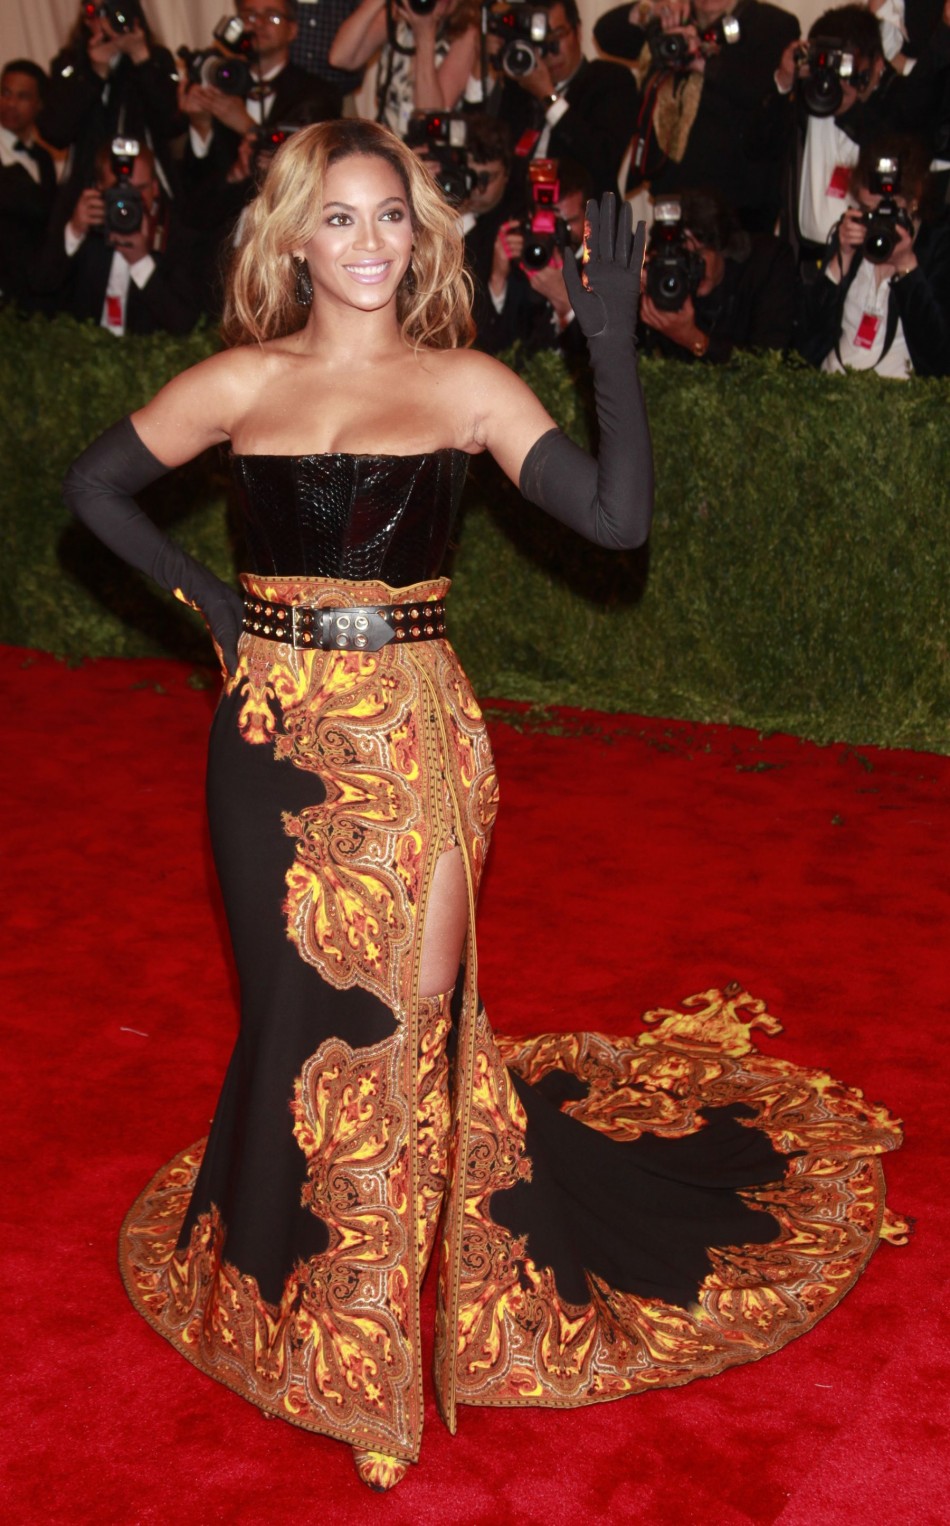 10. Beyonce, Singer